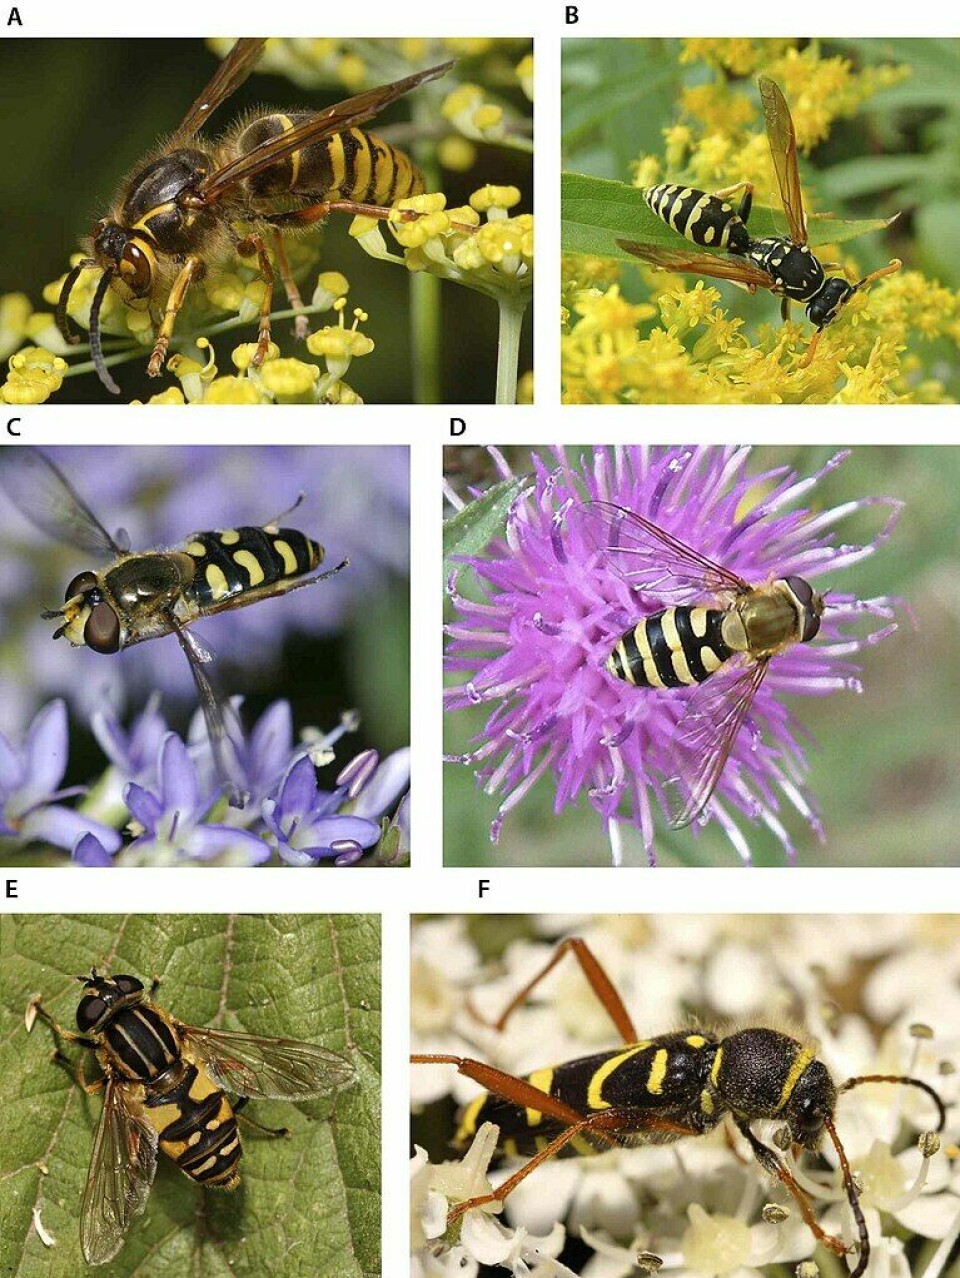 Seks bilder av insekter som ligner veps, med gule og sorte striper. Bare det første bilder viser en ekte veps.